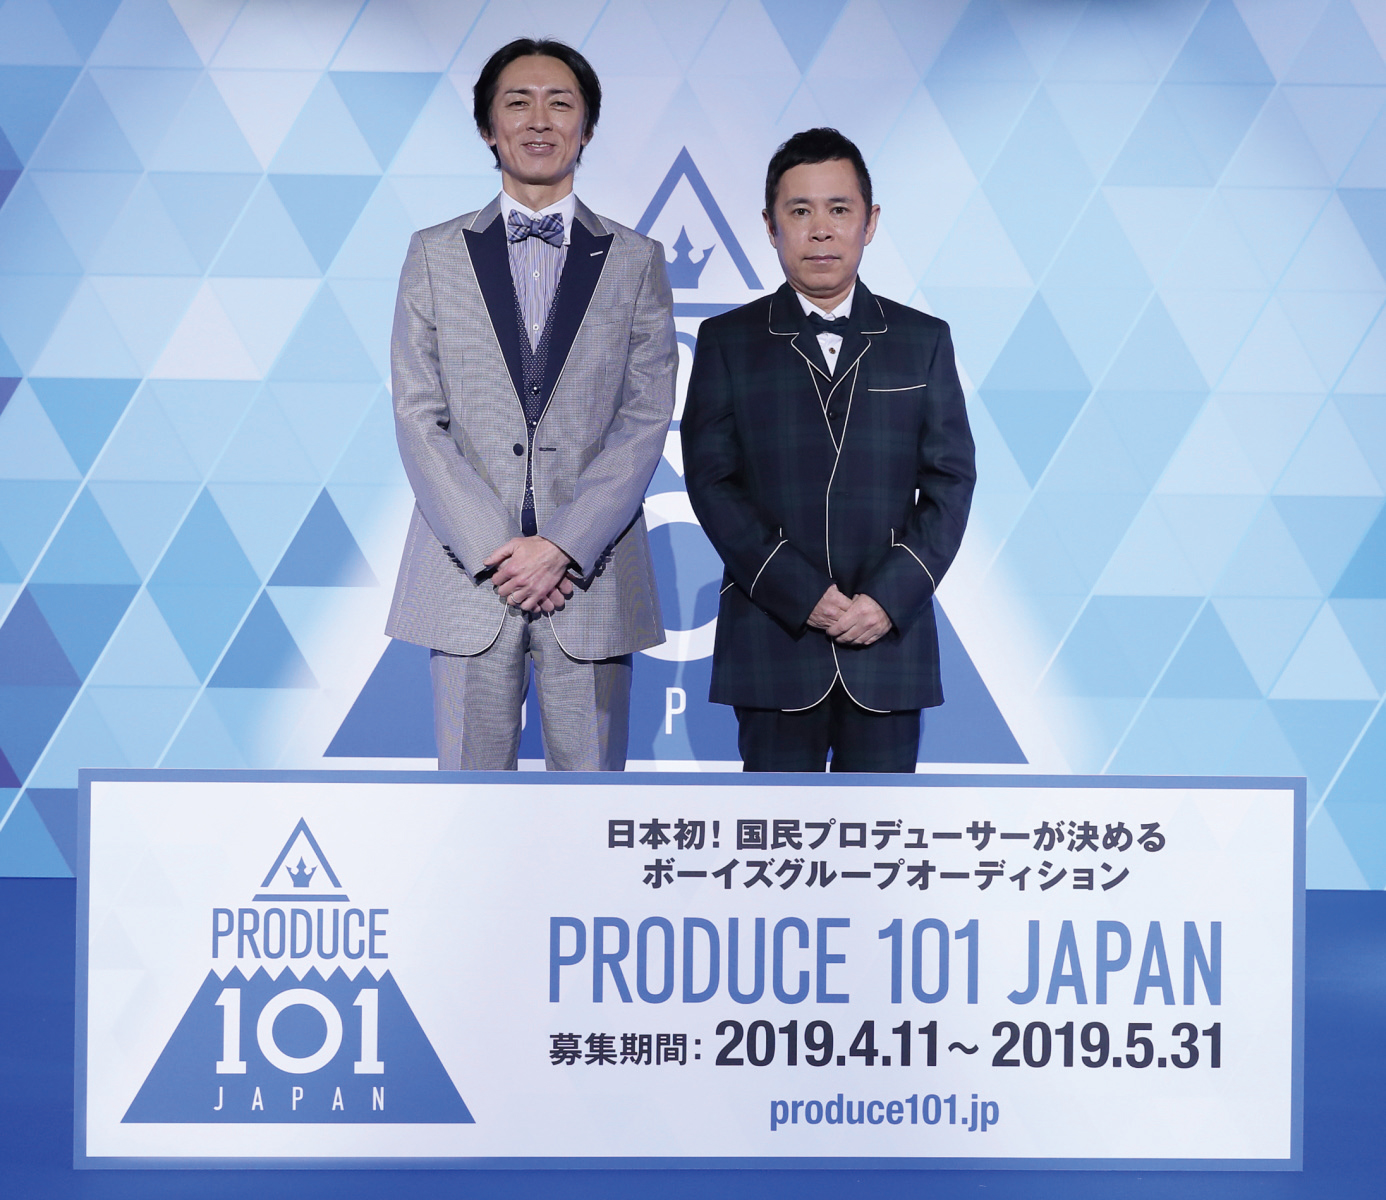 掴め、夢を―― 日本最大級オーディション番組 PRODUCE 101 JAPANがついに始動！！